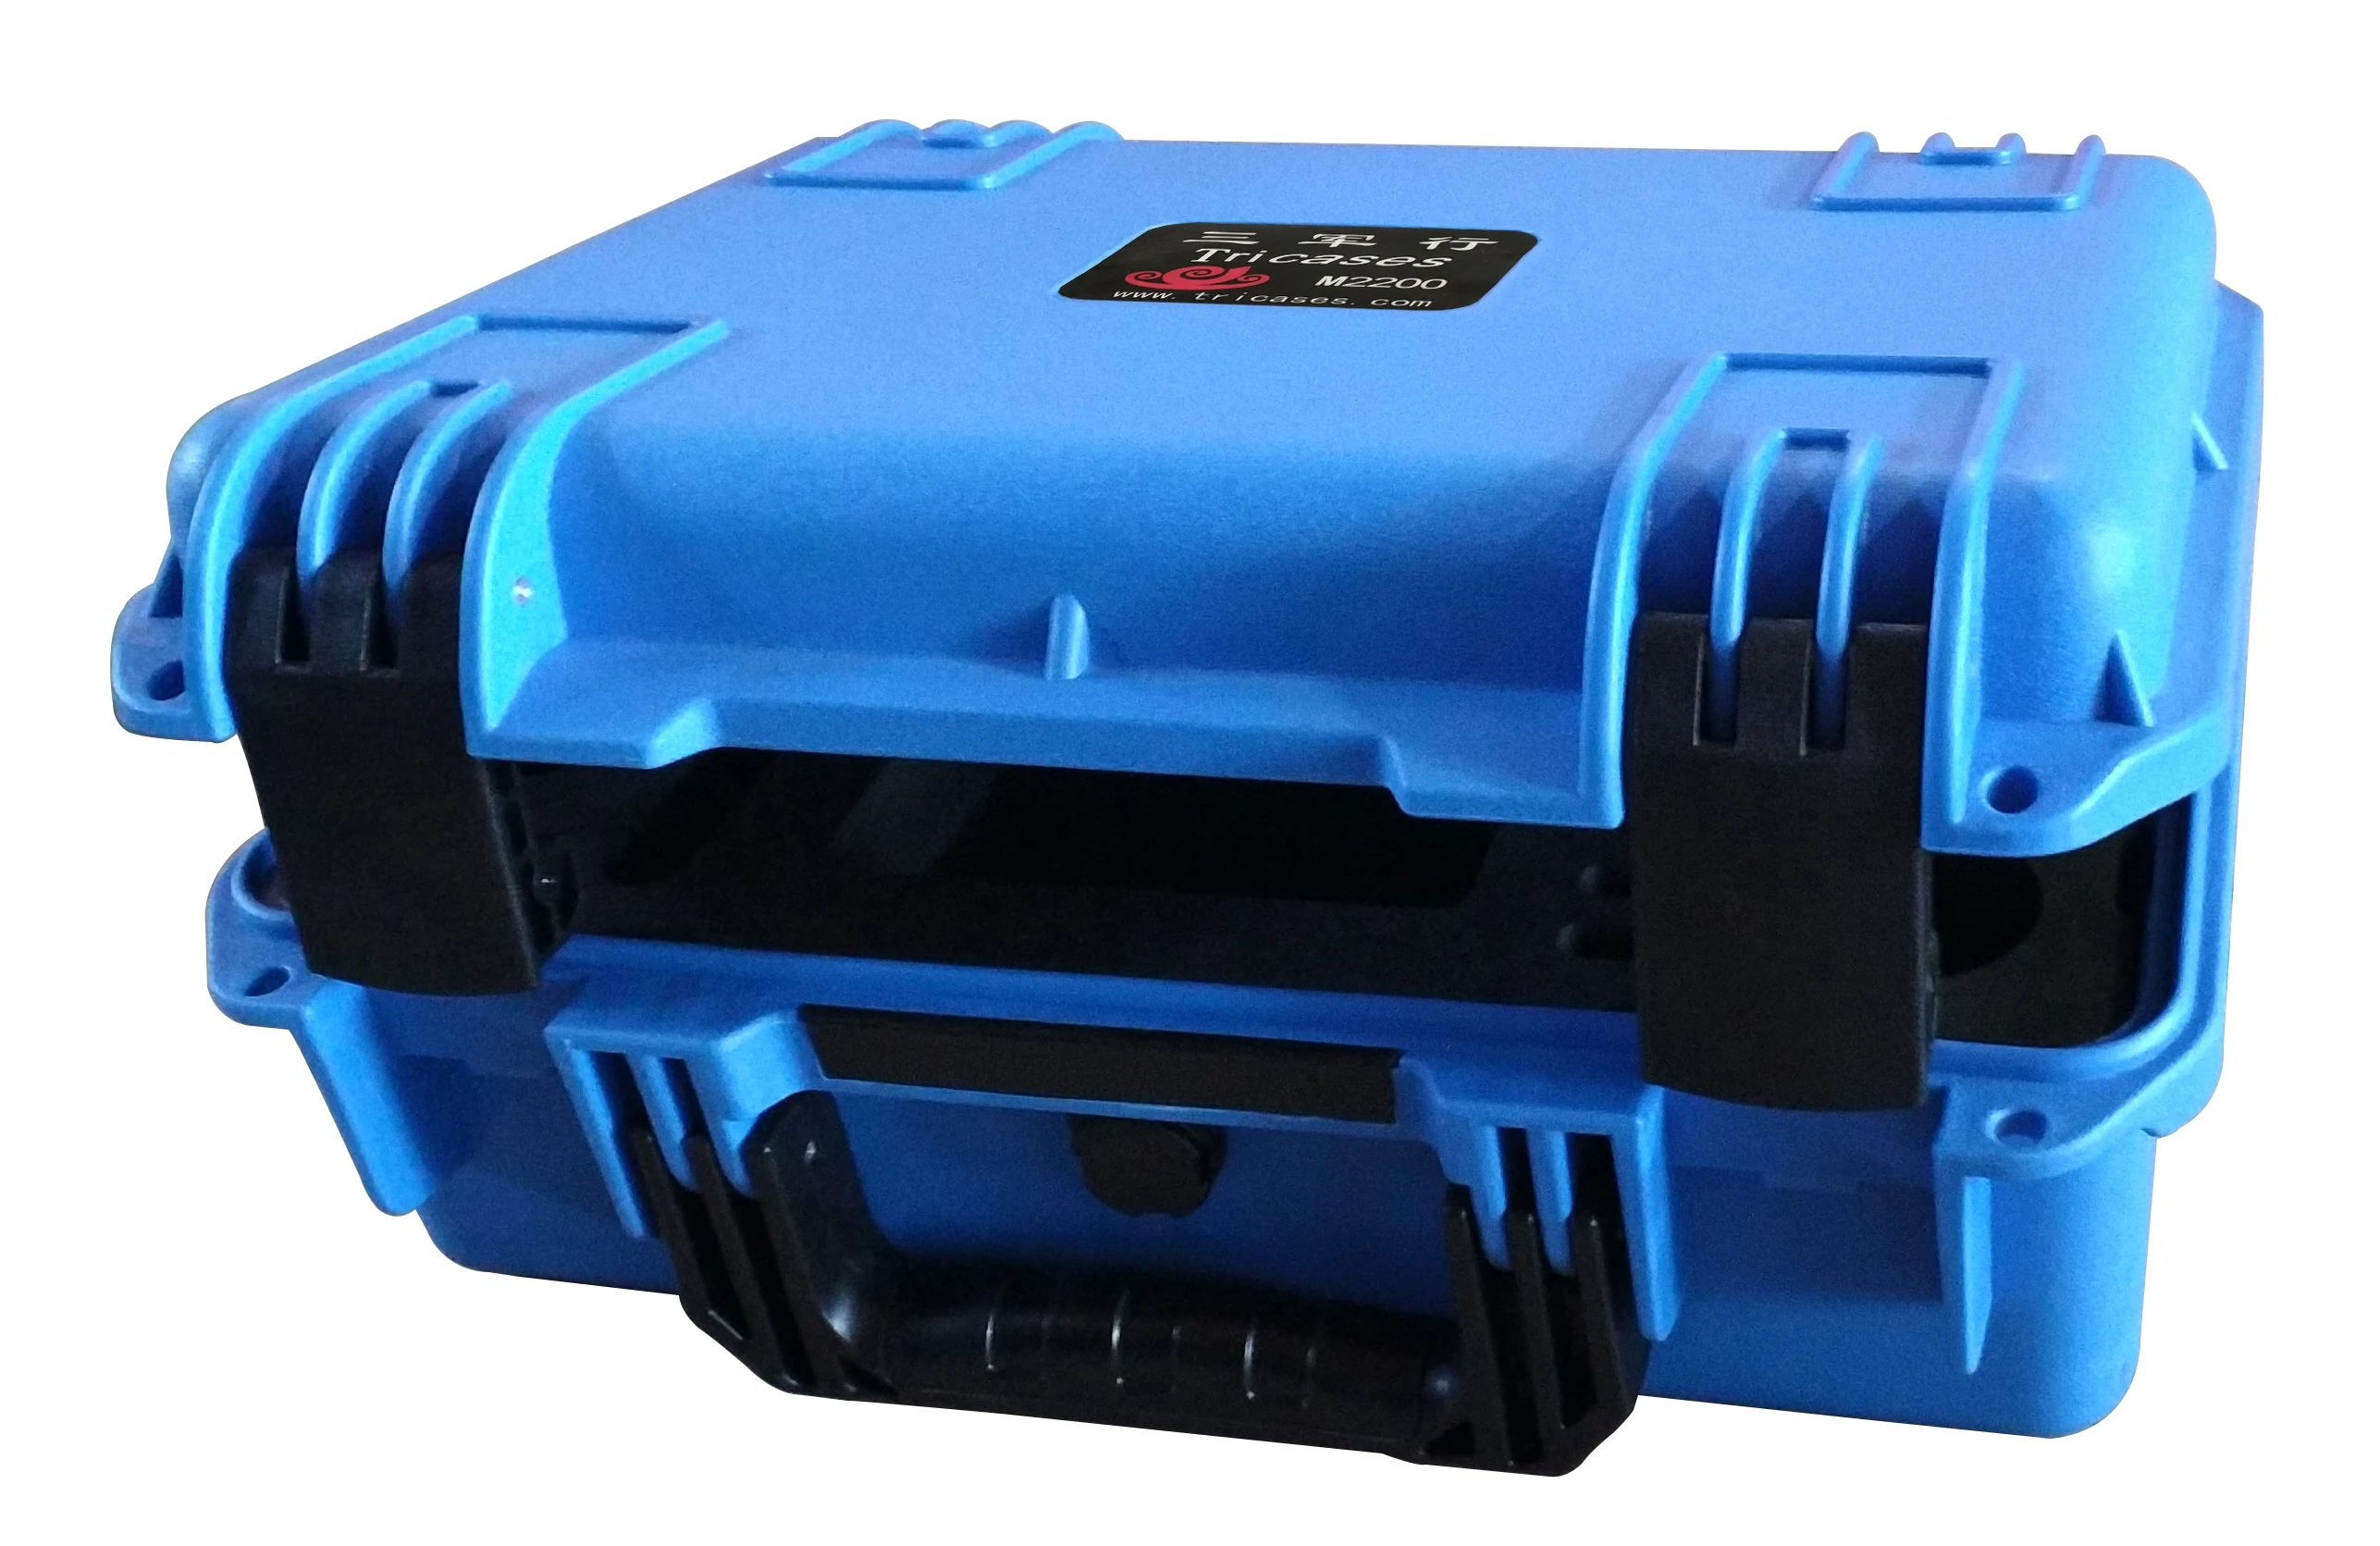 Tricases fabrika yeni gelmesi mavi renk IP67 su geçirmez darbeye dayanıklı sert PP plastik taşıma alet çantası enstrüman için M2200 . ' - ' . 2